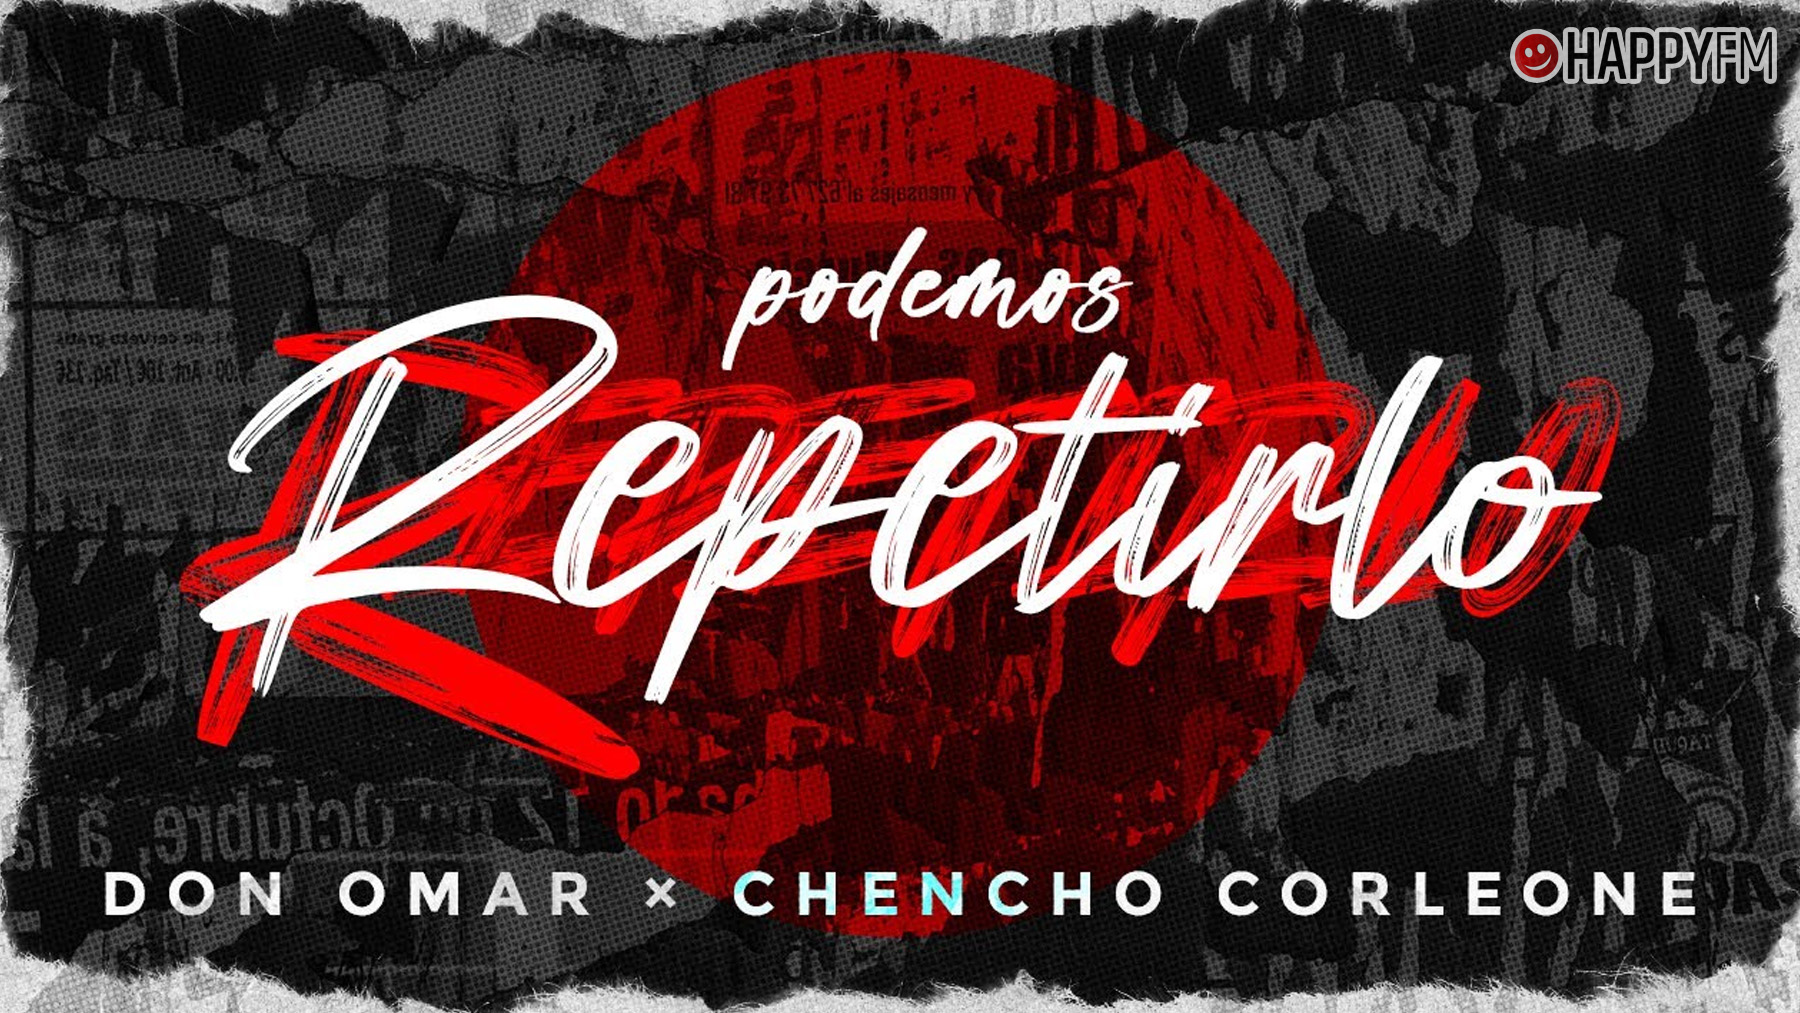 ‘Podemos repetirlo’, de Don Omar y Chencho Corleone: letra y vídeo